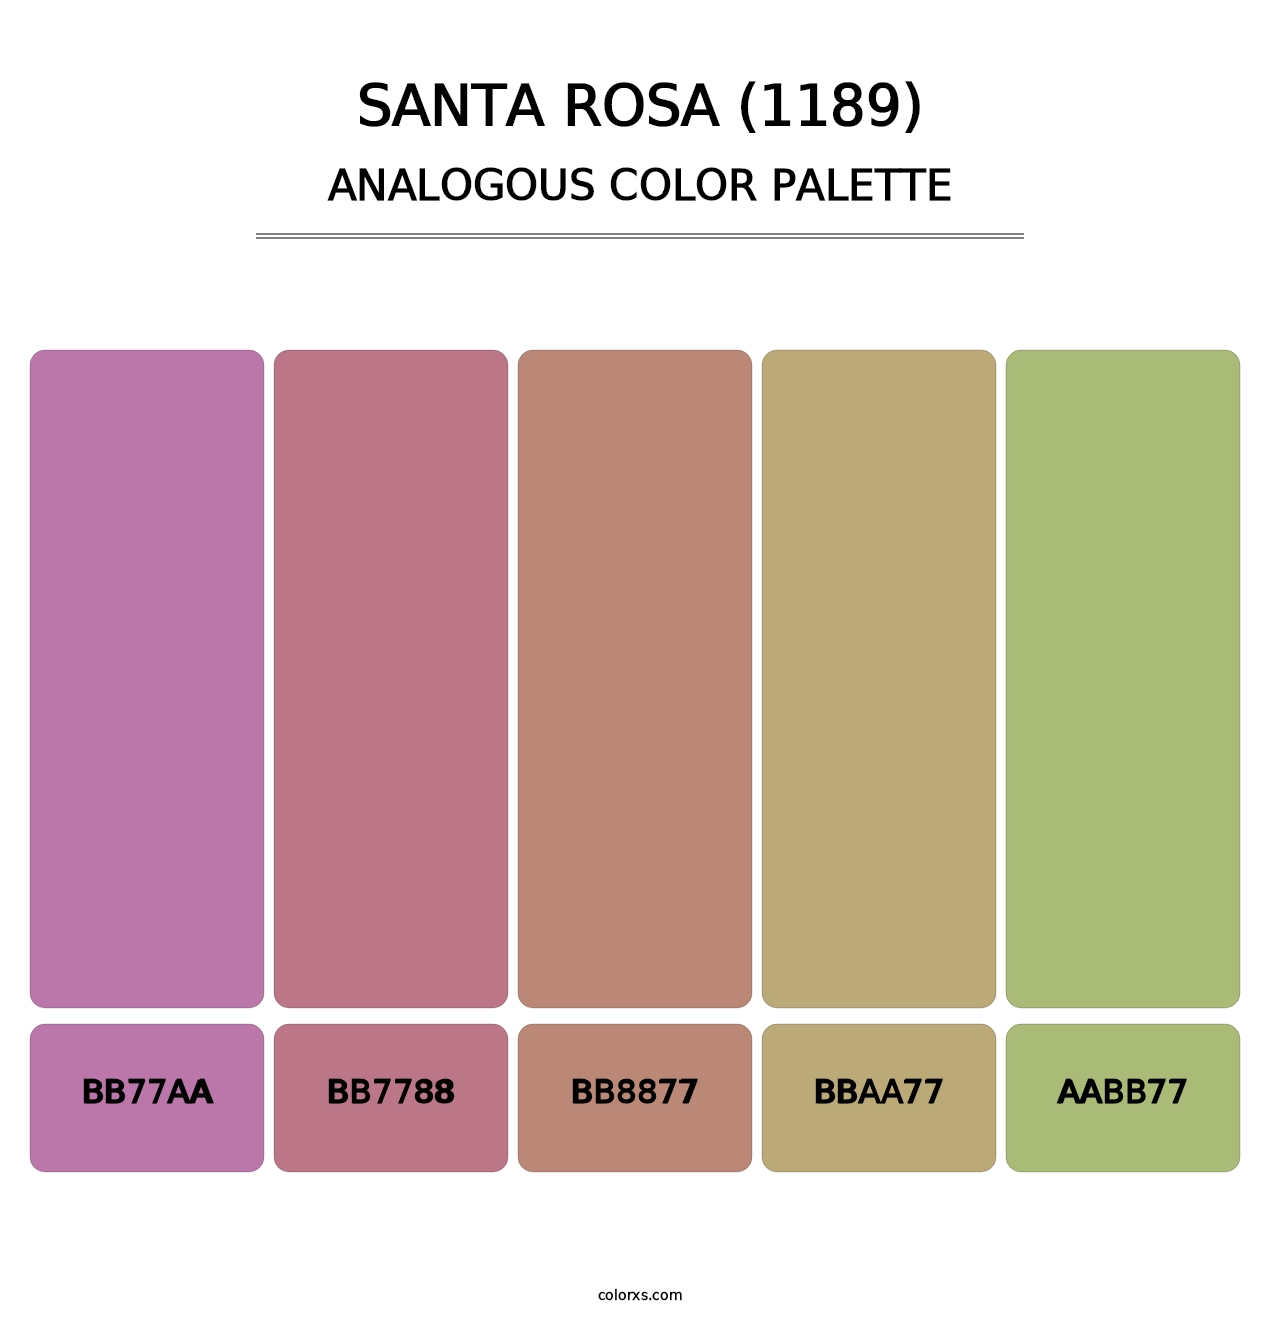 Santa Rosa (1189) - Analogous Color Palette